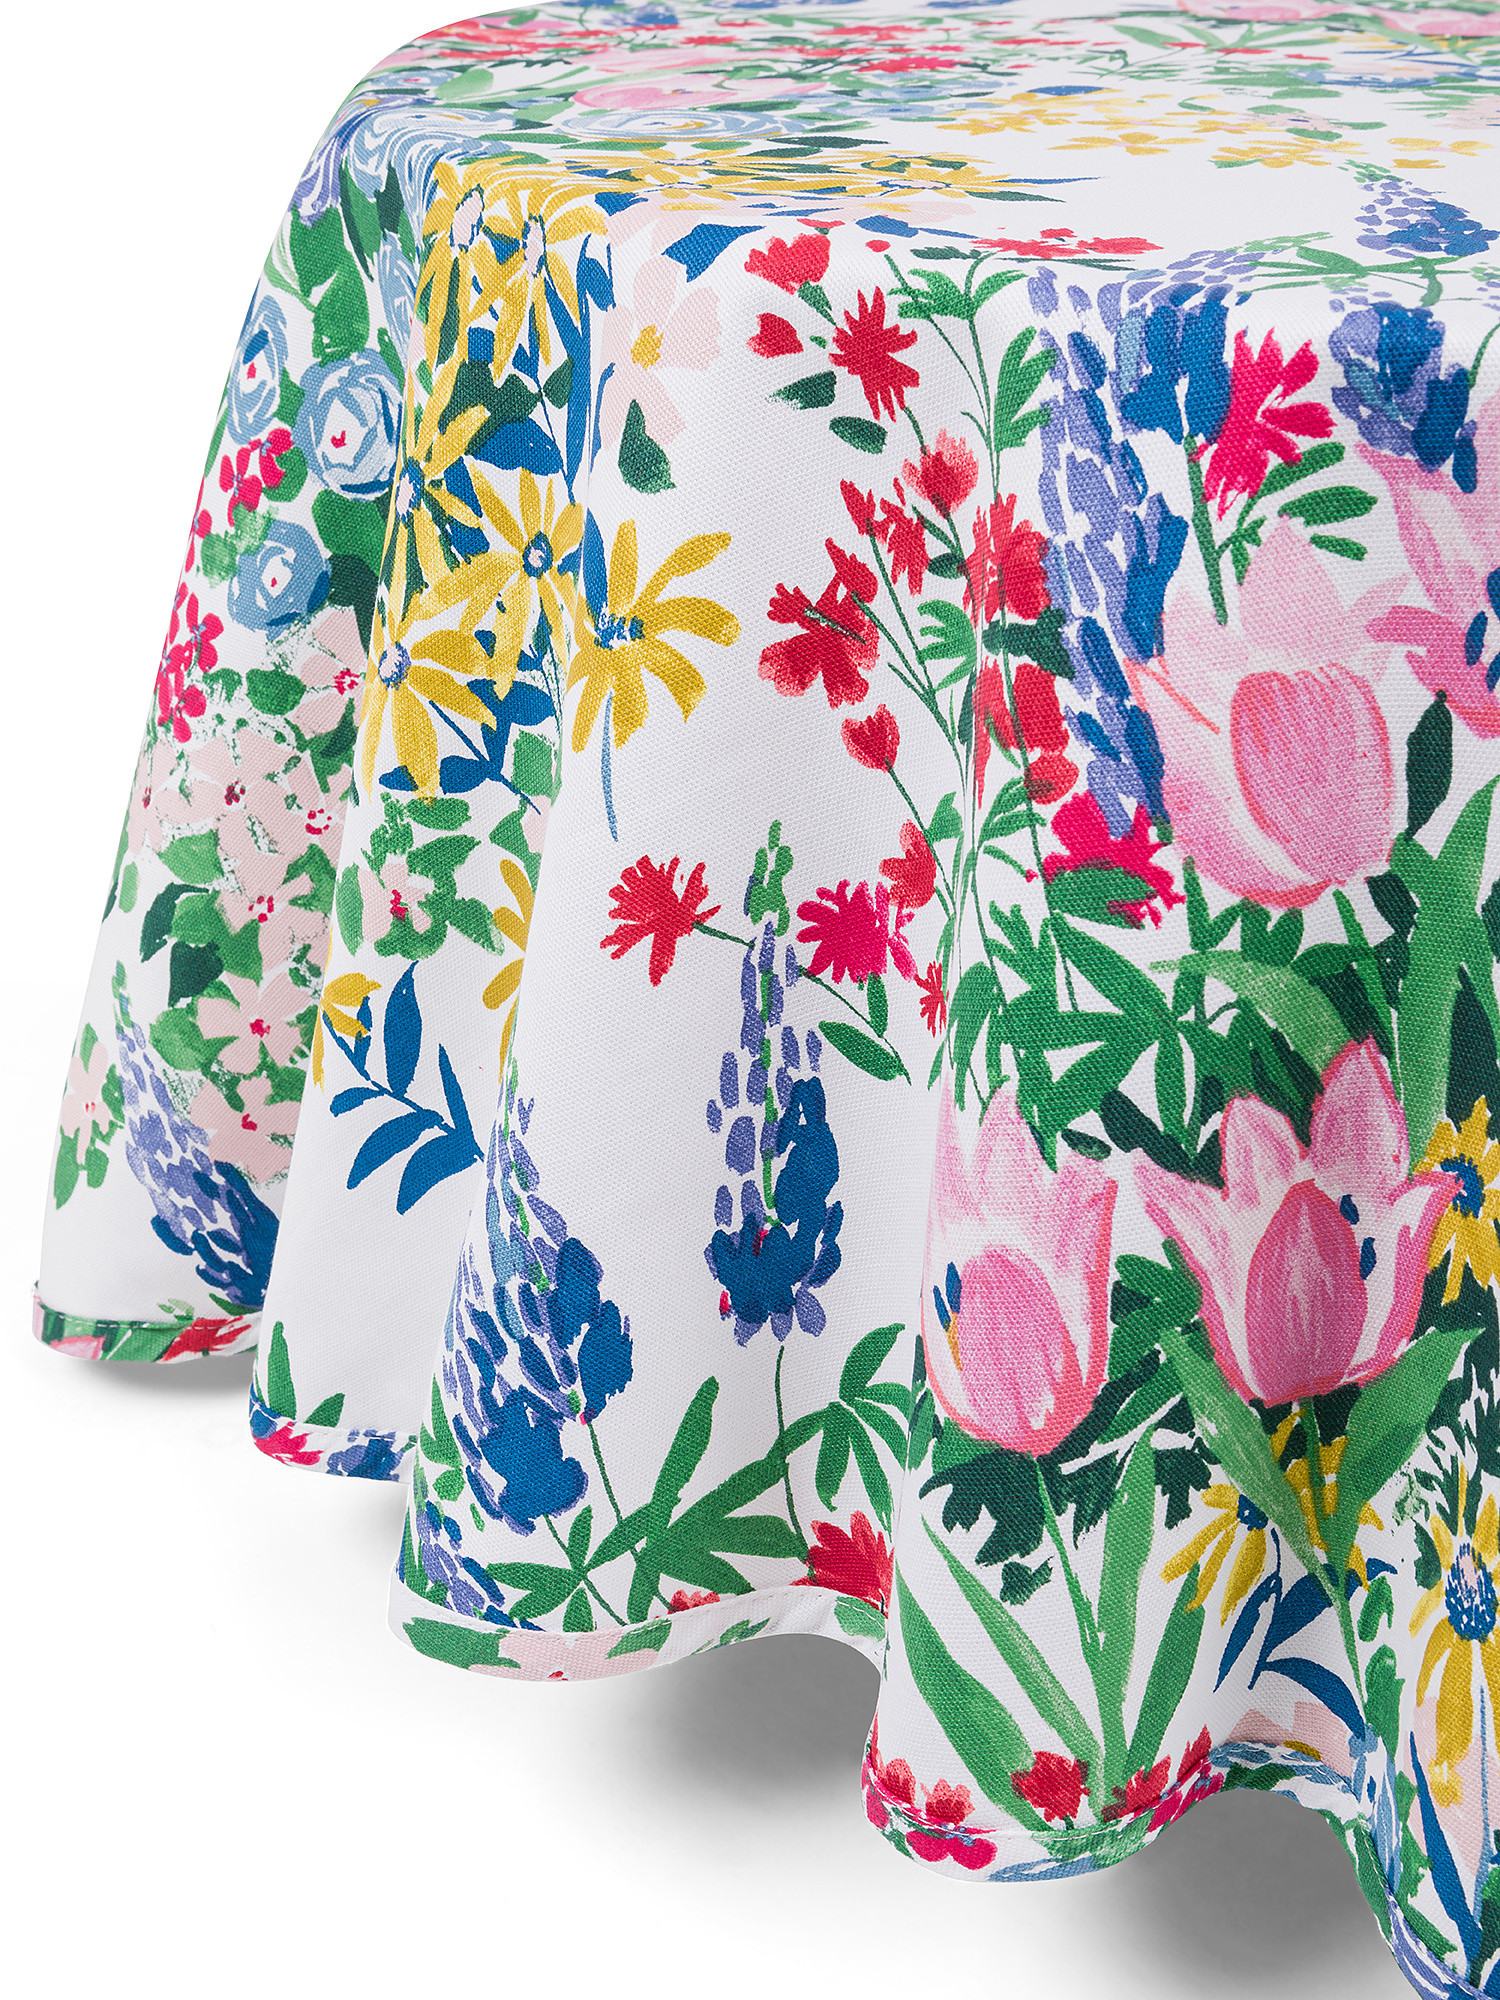 Tovaglia rotonda panama di cotone stampa fiori, Multicolor, large image number 1